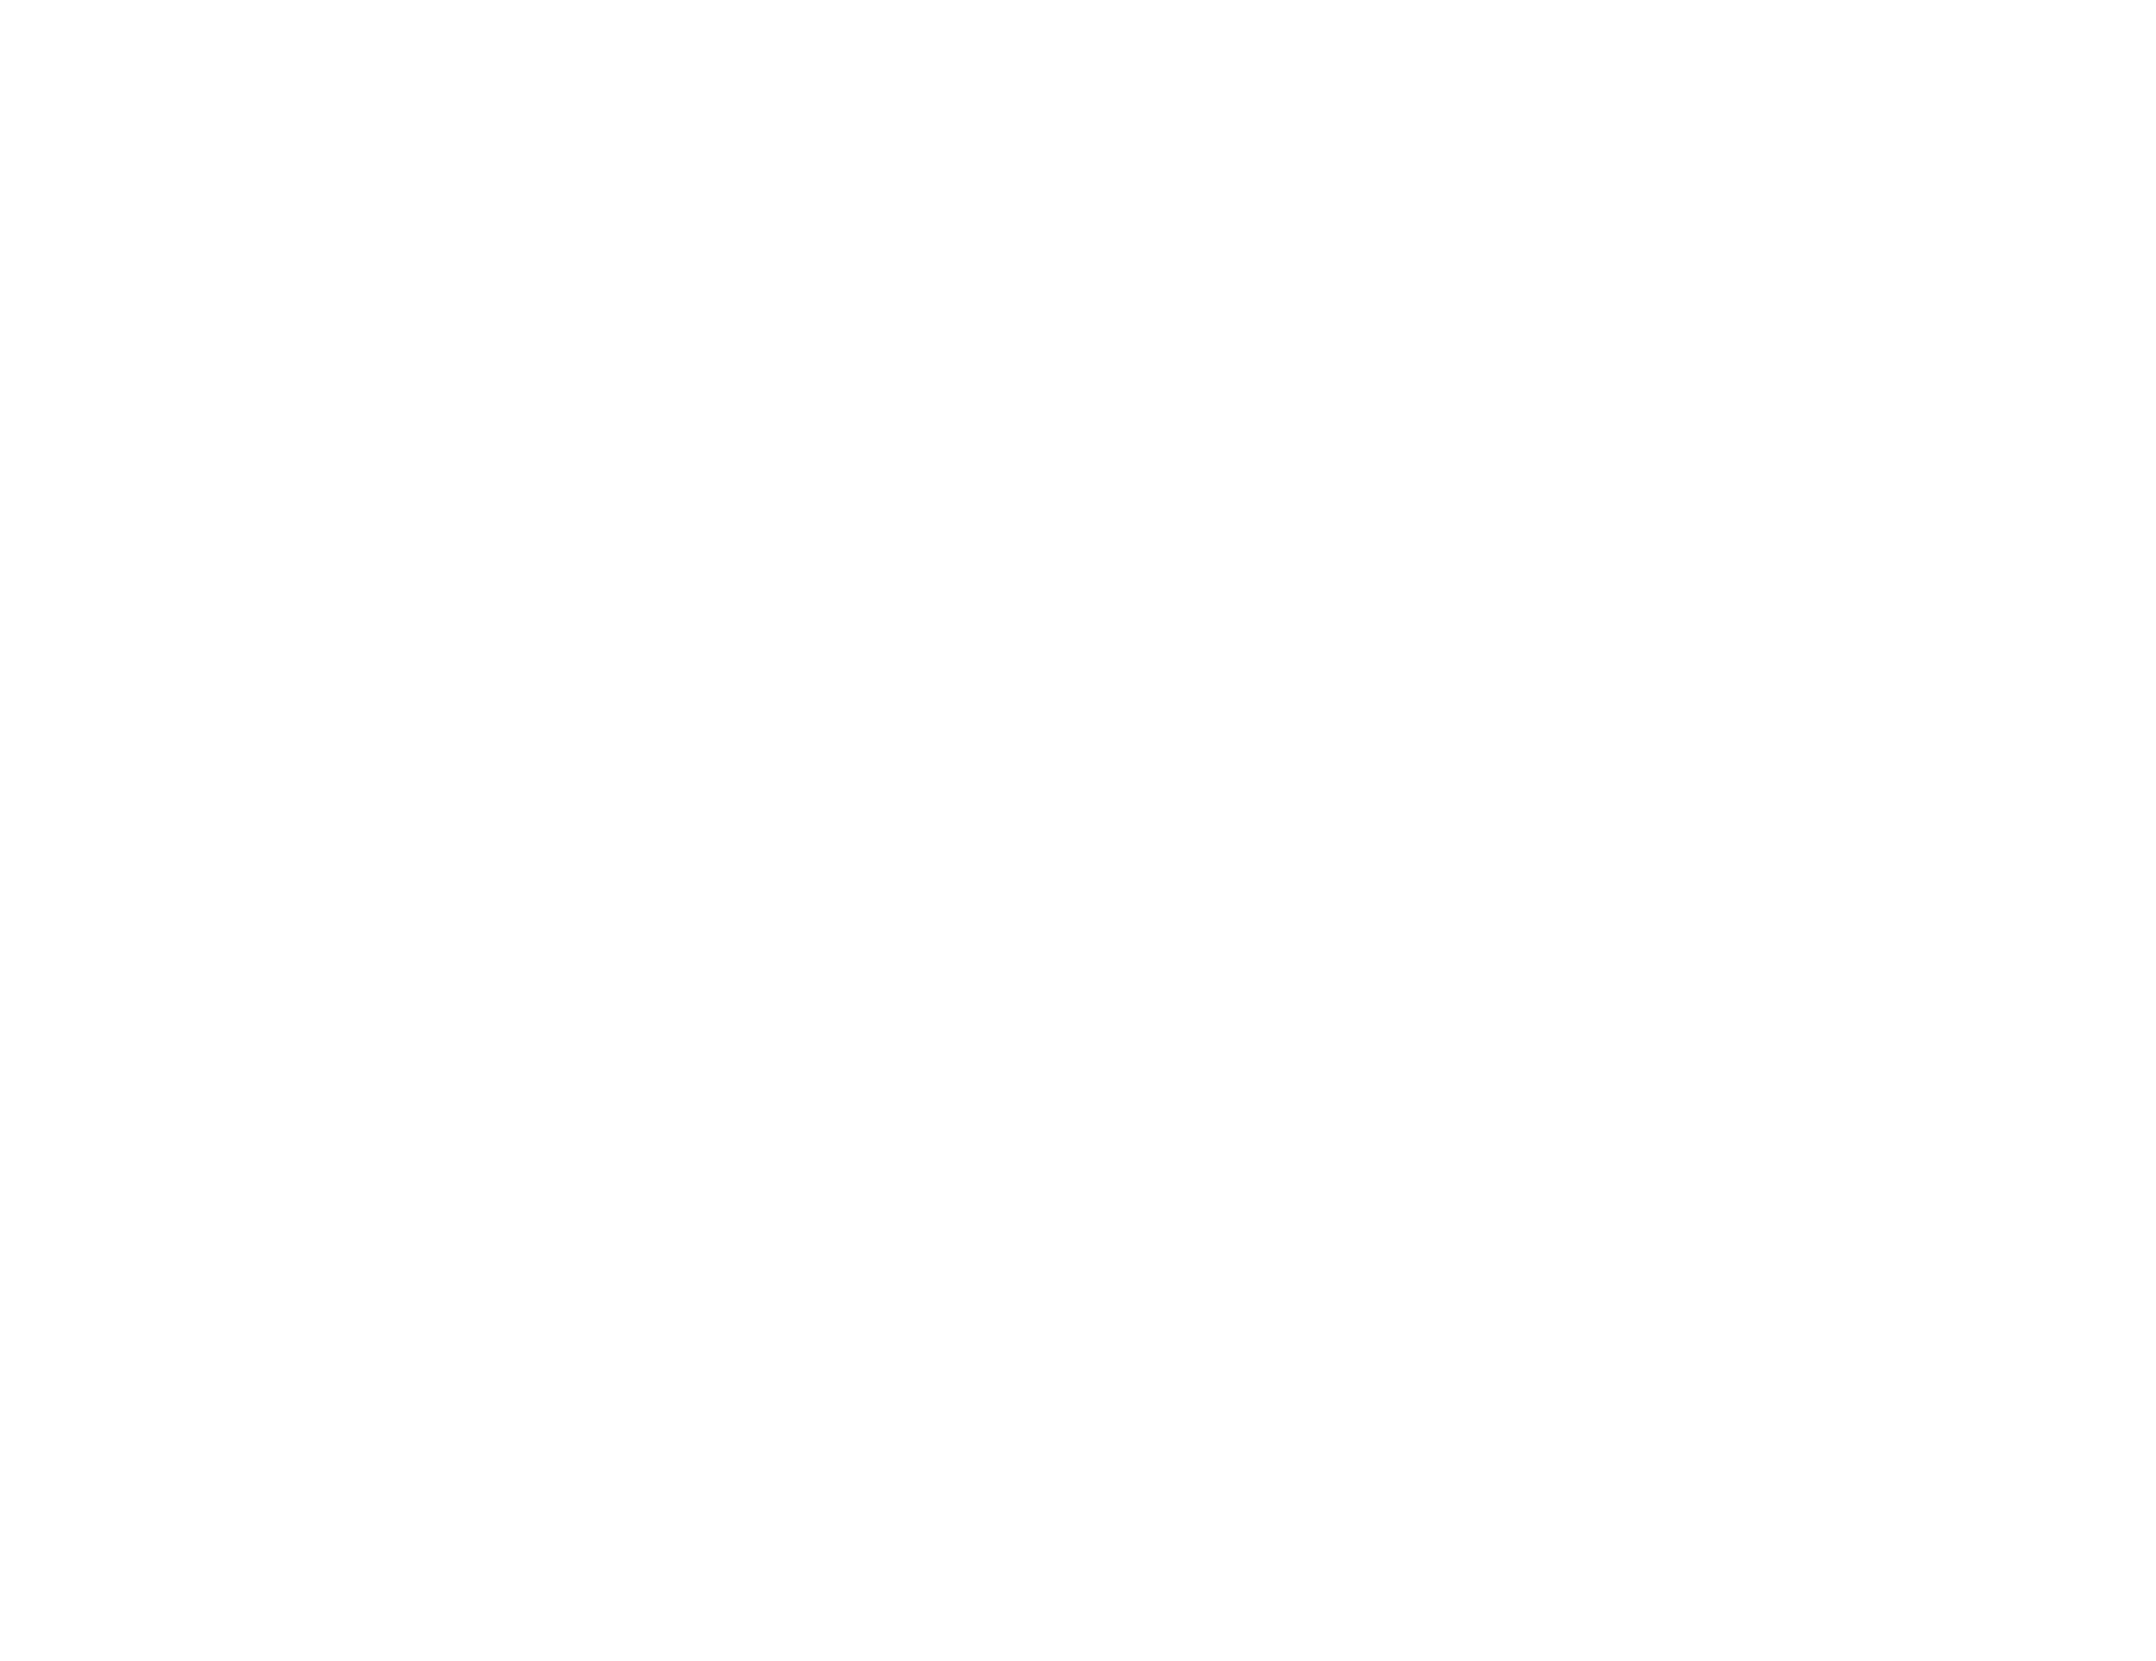 Retro Gym